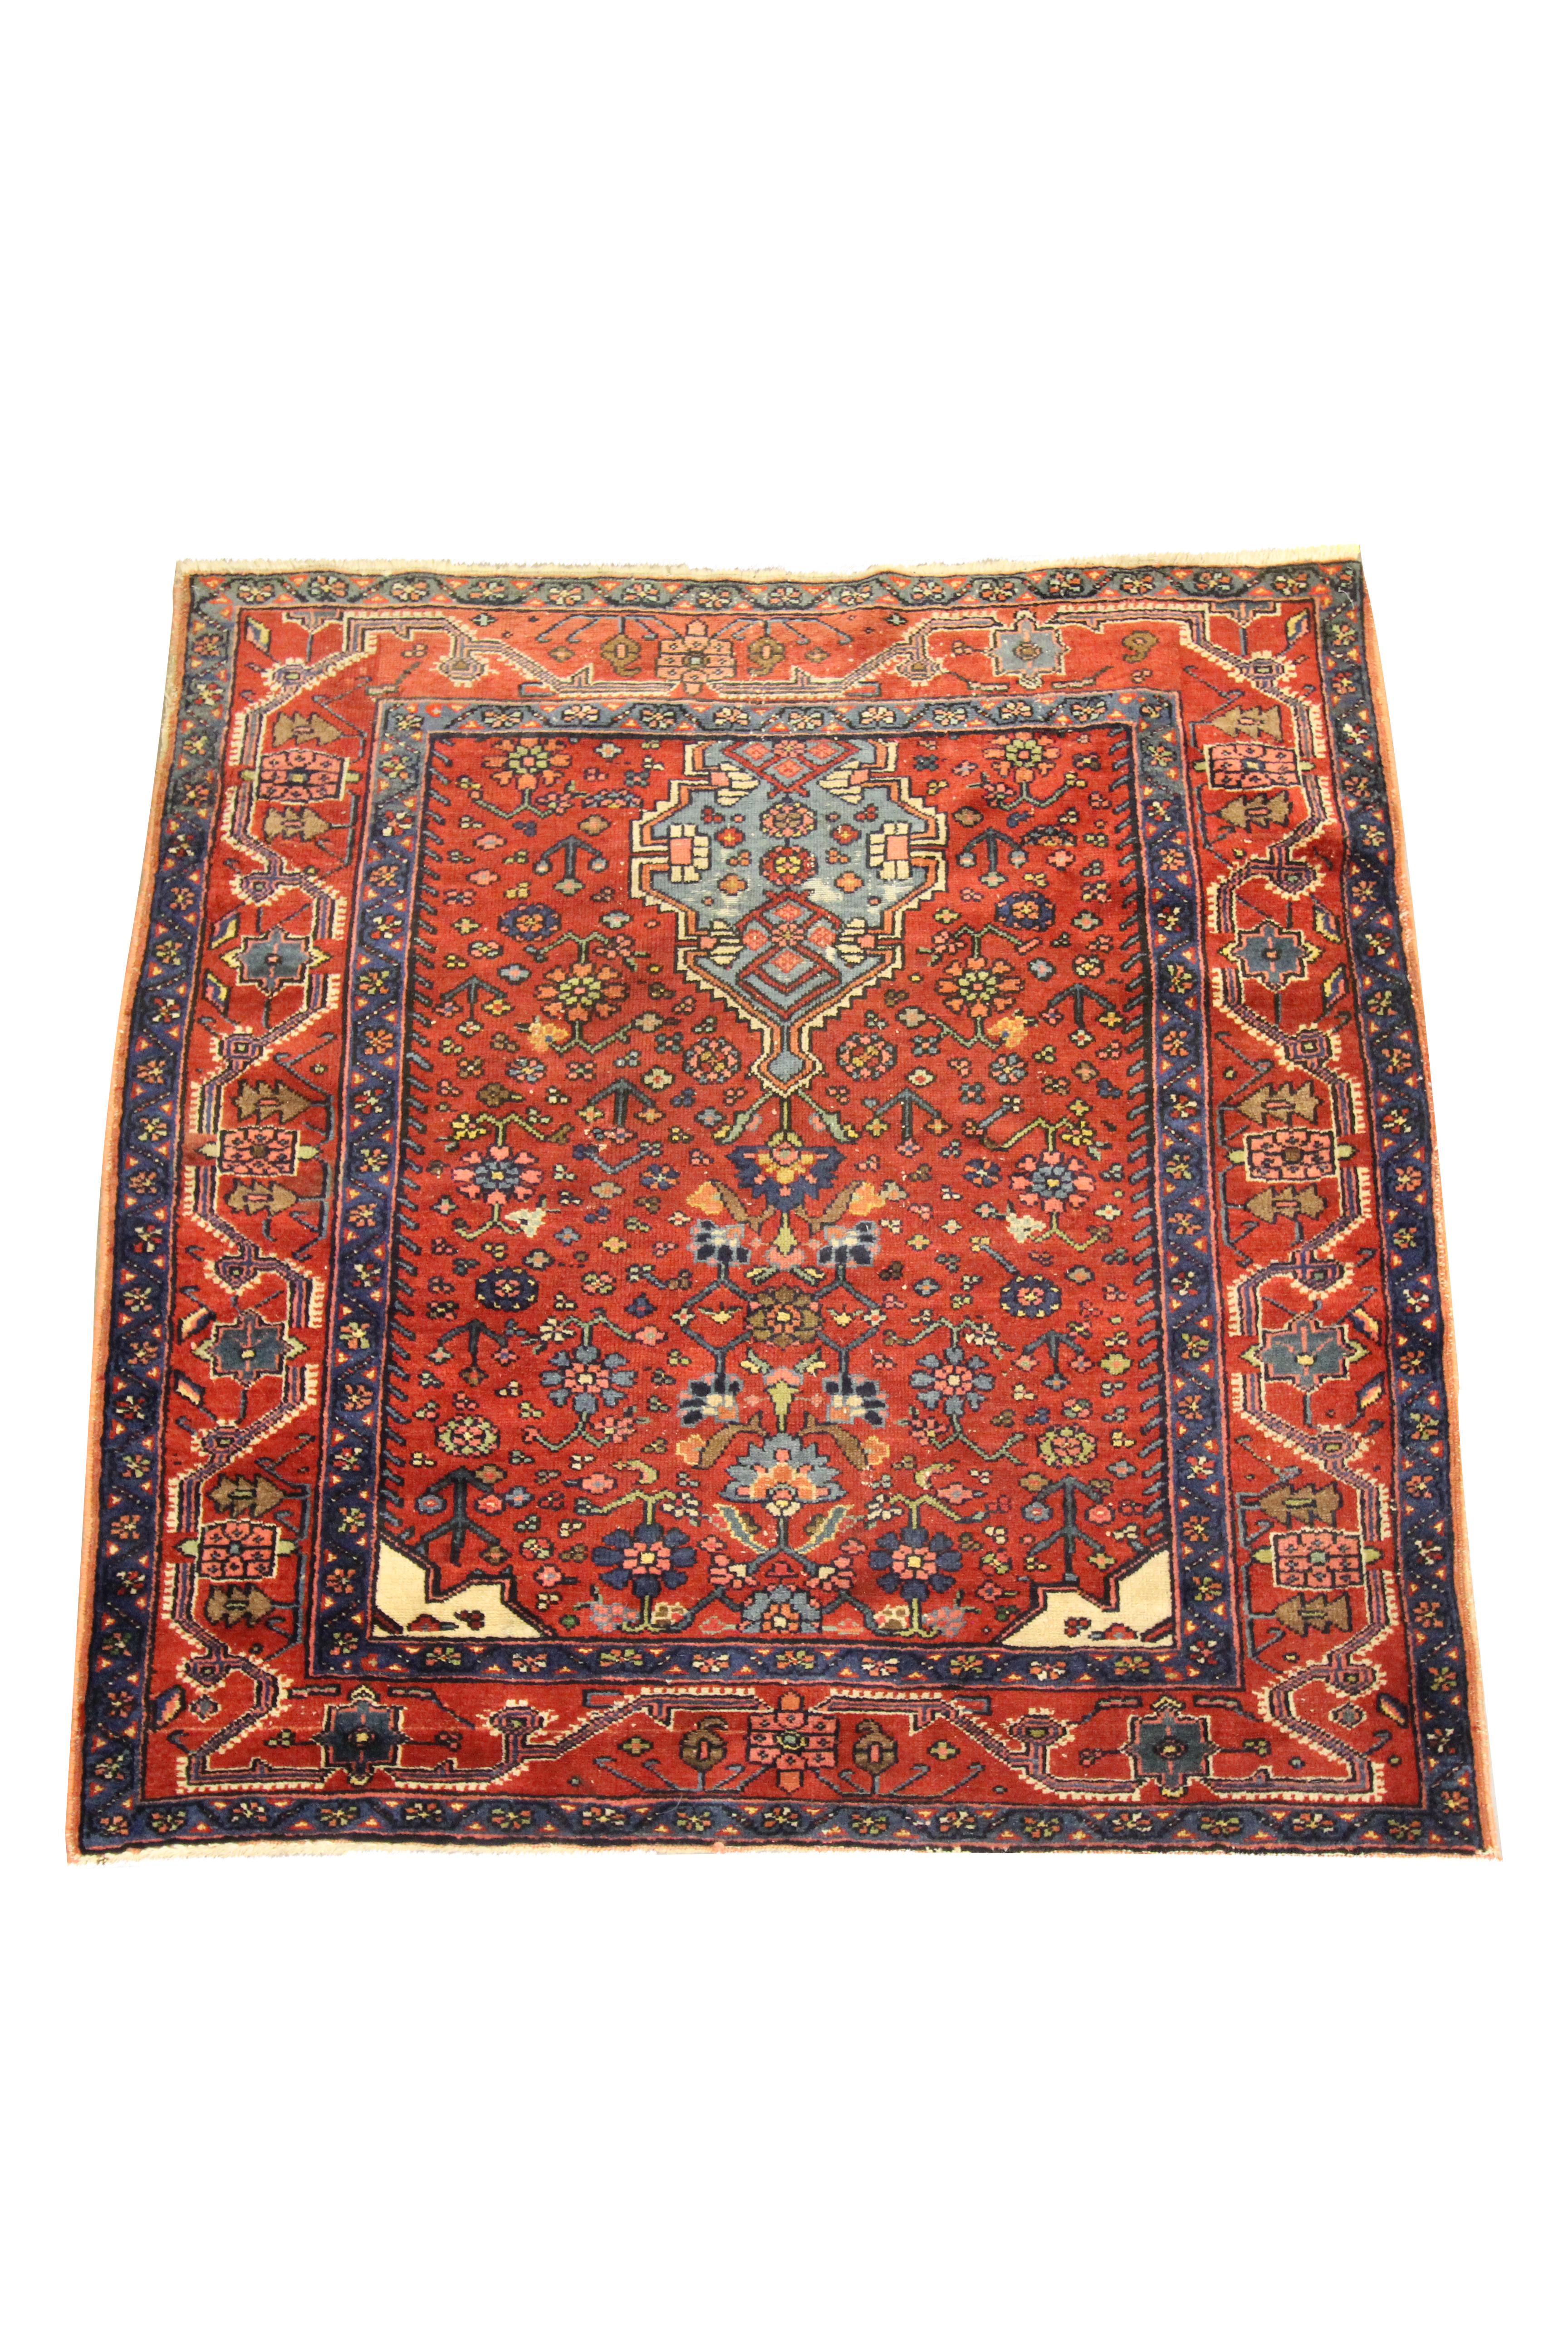 Dieser feine Wollteppich ist ein hervorragendes Beispiel für Teppiche, die im späten 19. Jahrhundert, etwa um 1880, gewebt wurden. Das Design zeigt ein traditionelles Stammesmuster mit einheimischen Motiven, die auf einem rostroten Hintergrund mit